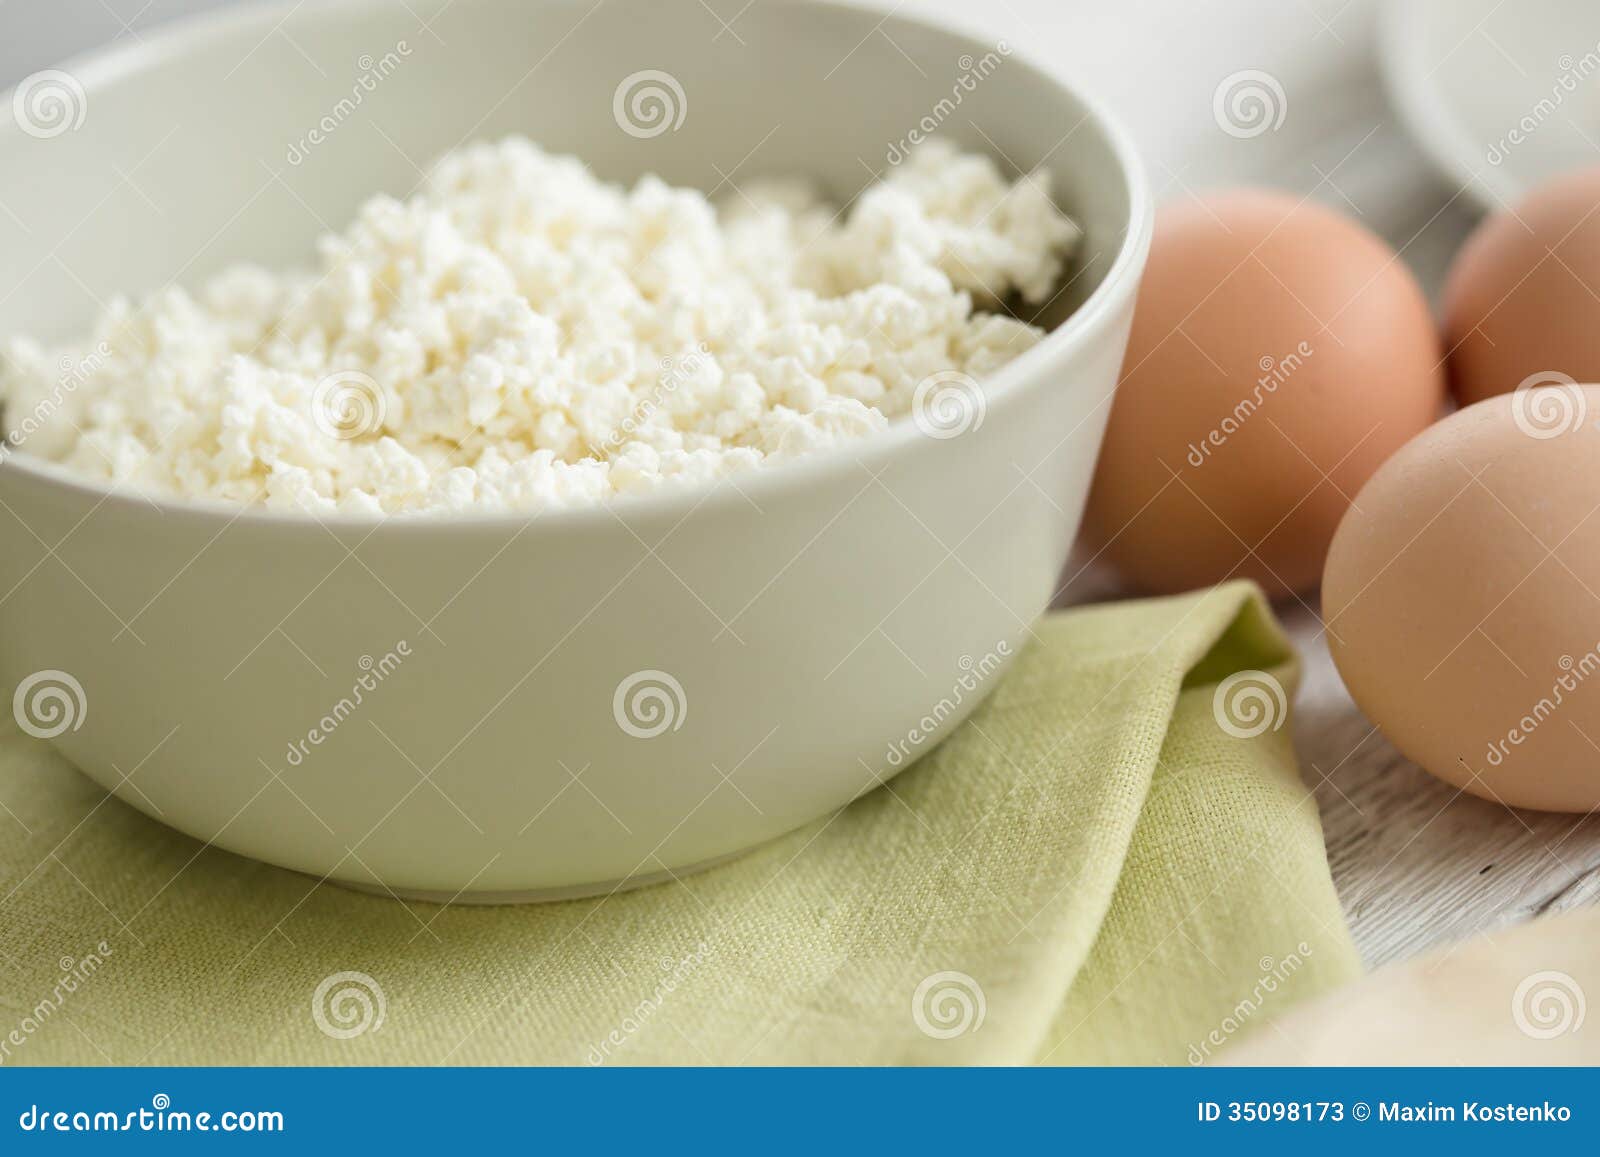 Похудеть на твороге и яйцах в домашних условиях